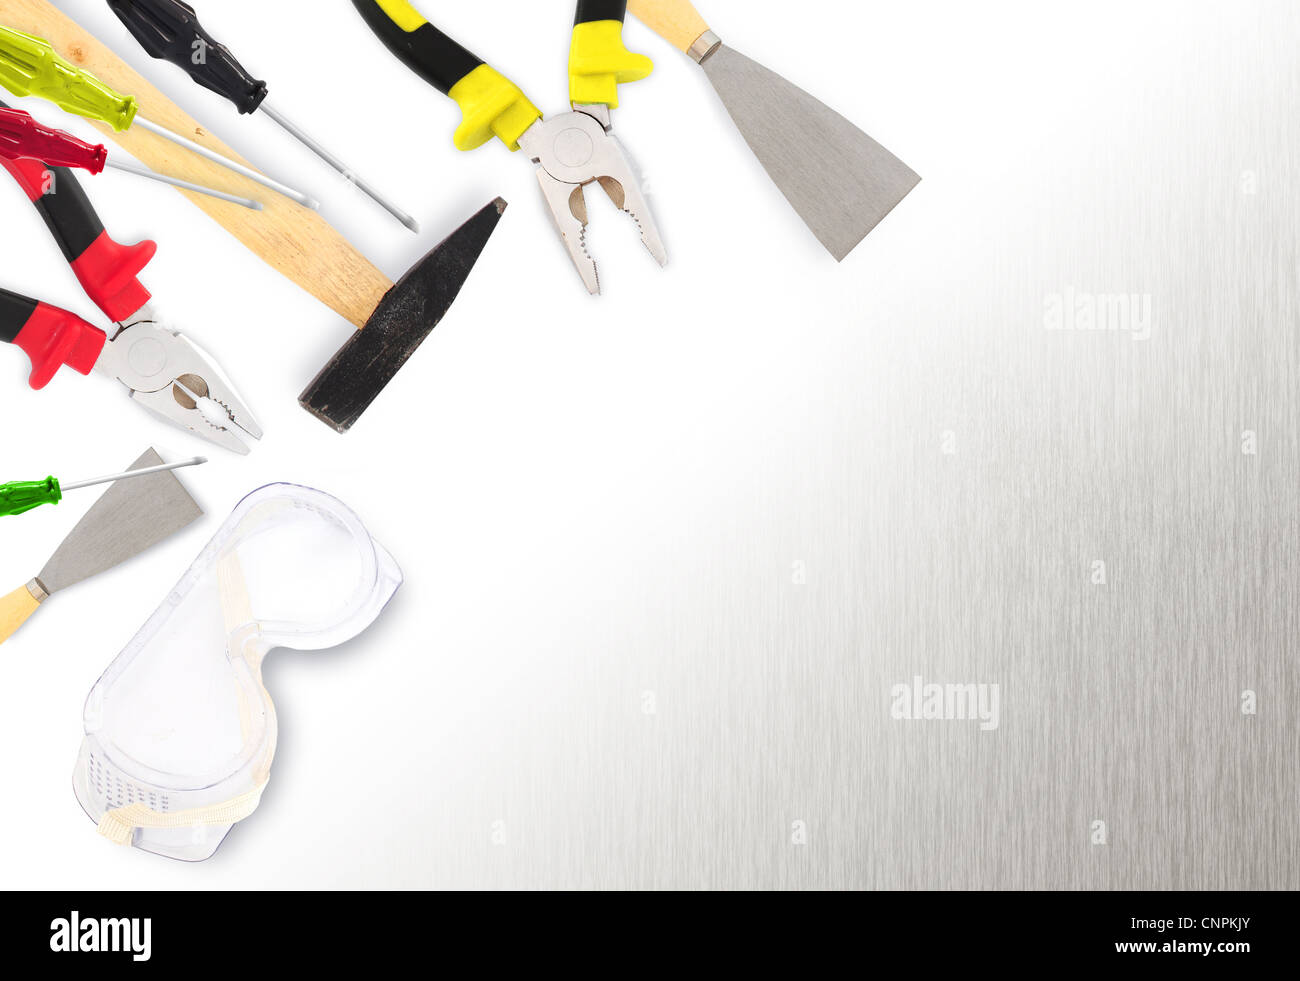 Verschiedene Werkzeuge - Hammer, Zange, Schraubendreher, Spachtel, Farbroller auf Metalloberfläche mit Textfreiraum Stockfoto